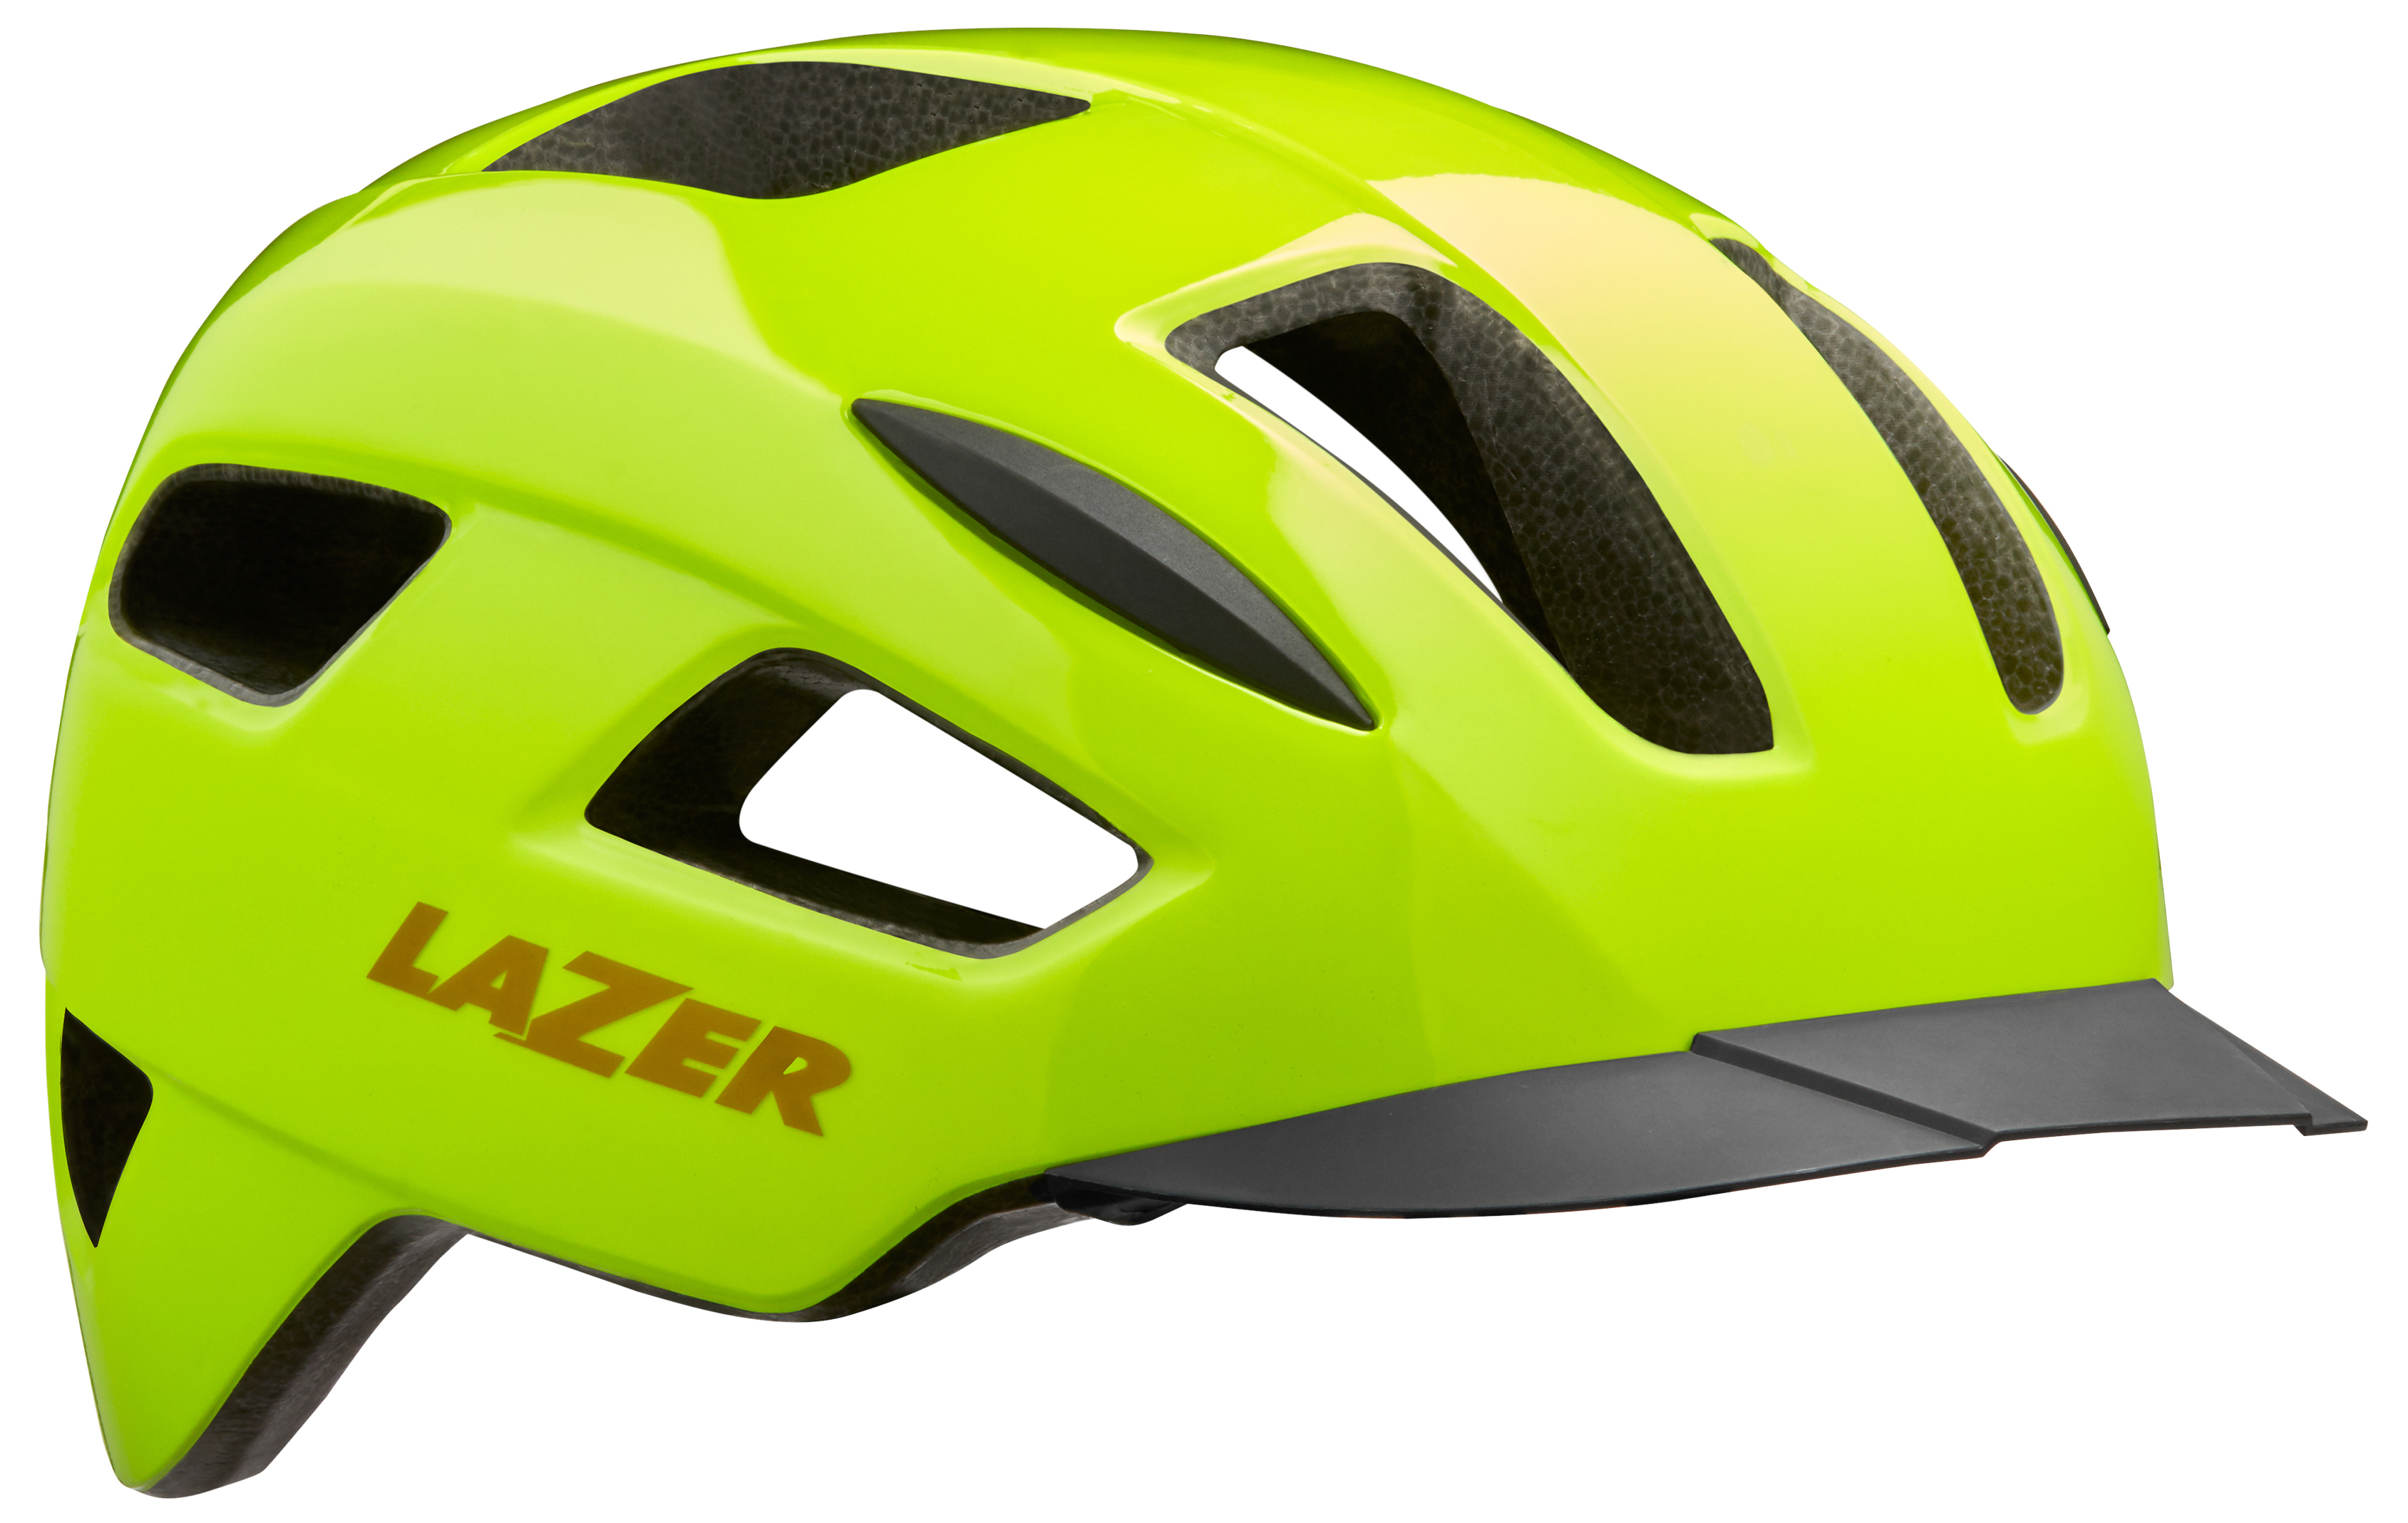  Велошлем Lazer Lizard 2020